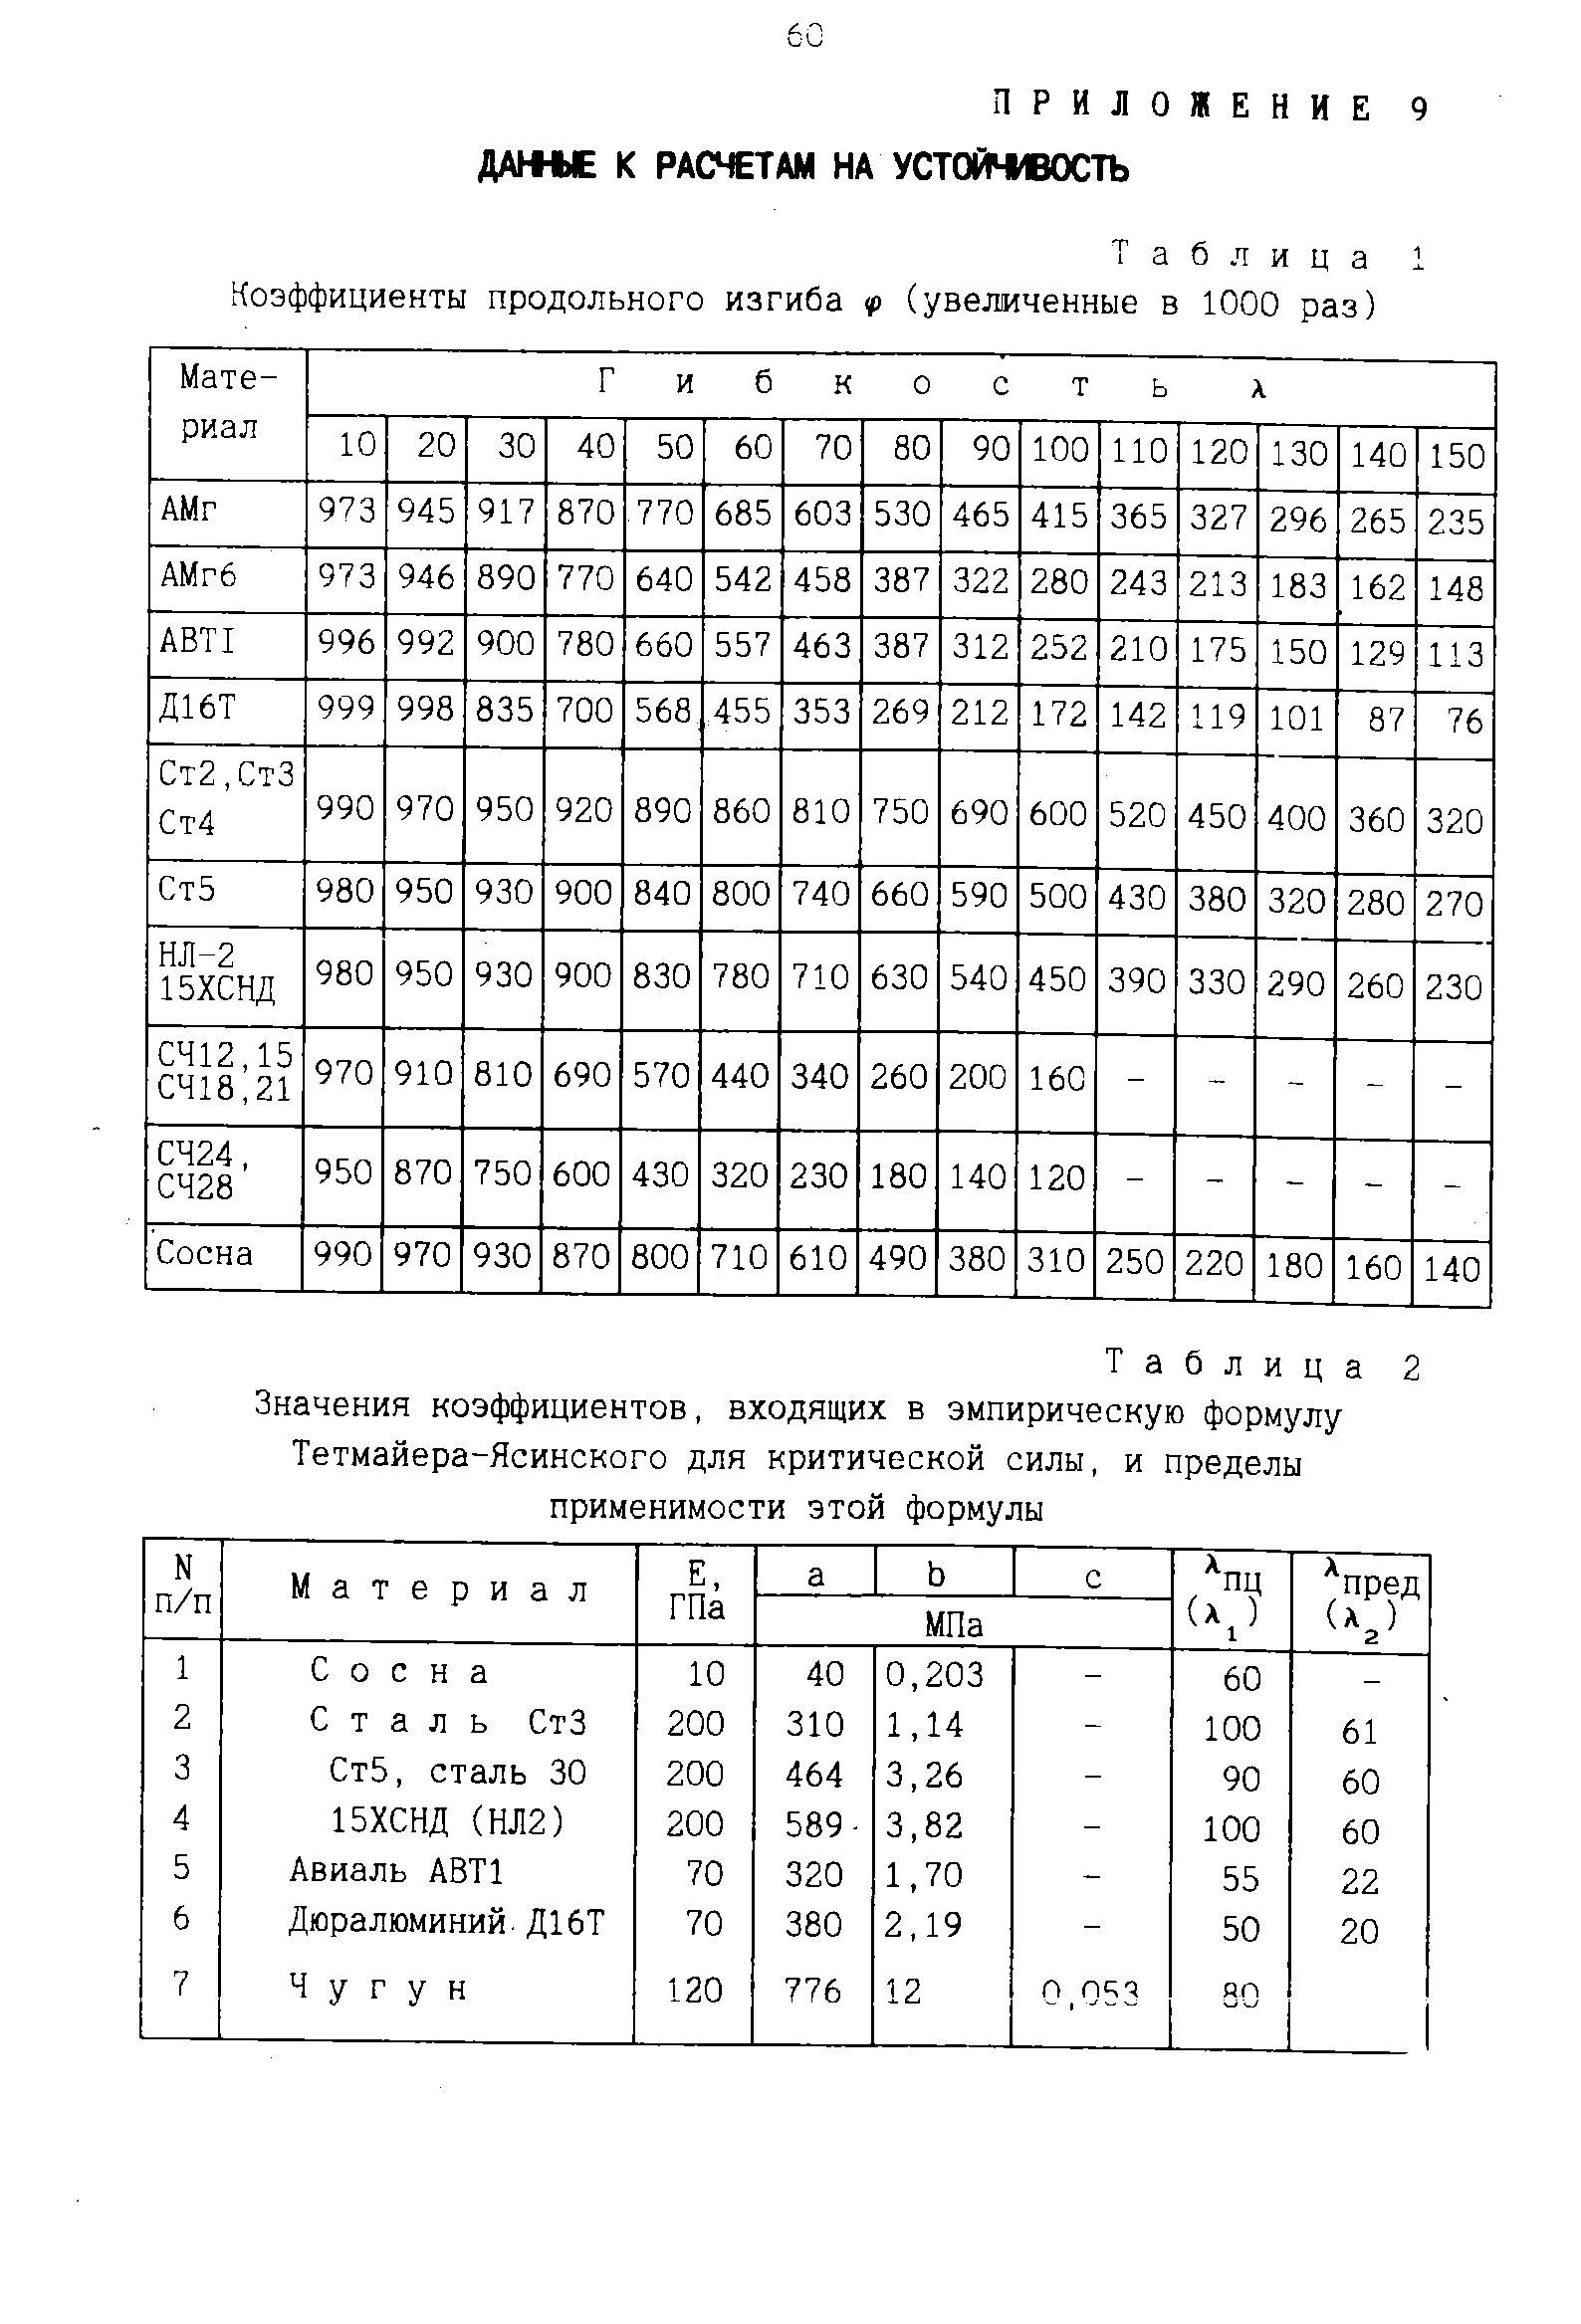 Таблица 1 Коэффициенты продольного изгиба <р (увеличенные в 1000 раз)
